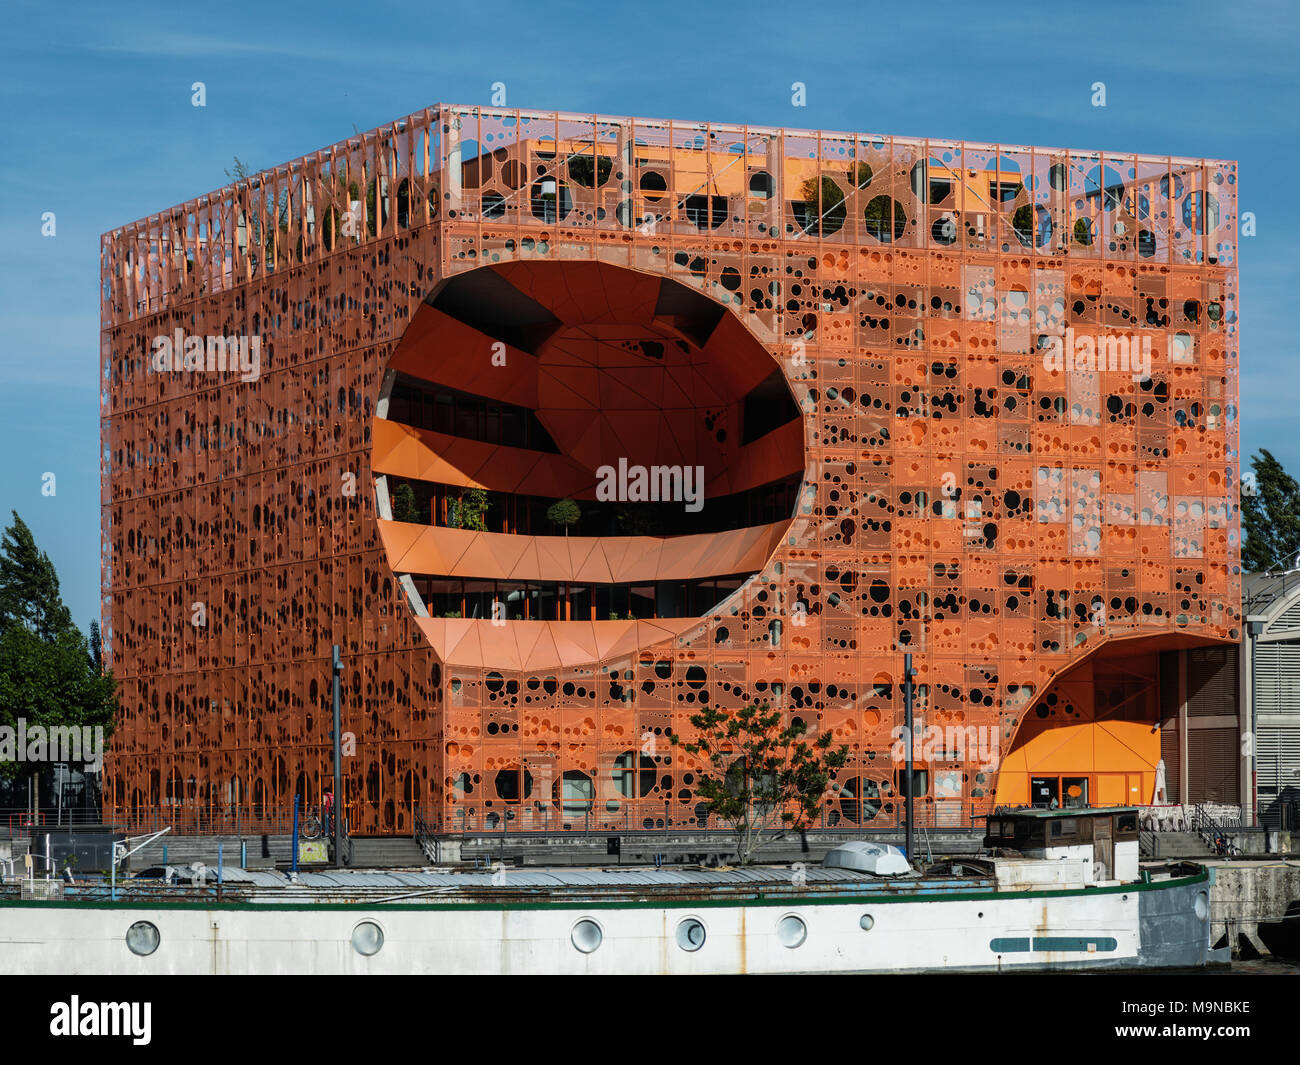 Blick auf die Orange Cube Gebäude, von einem Boot auf dem Fluss, La Confluence Bezirk, Lyon, Frankreich Stockfoto